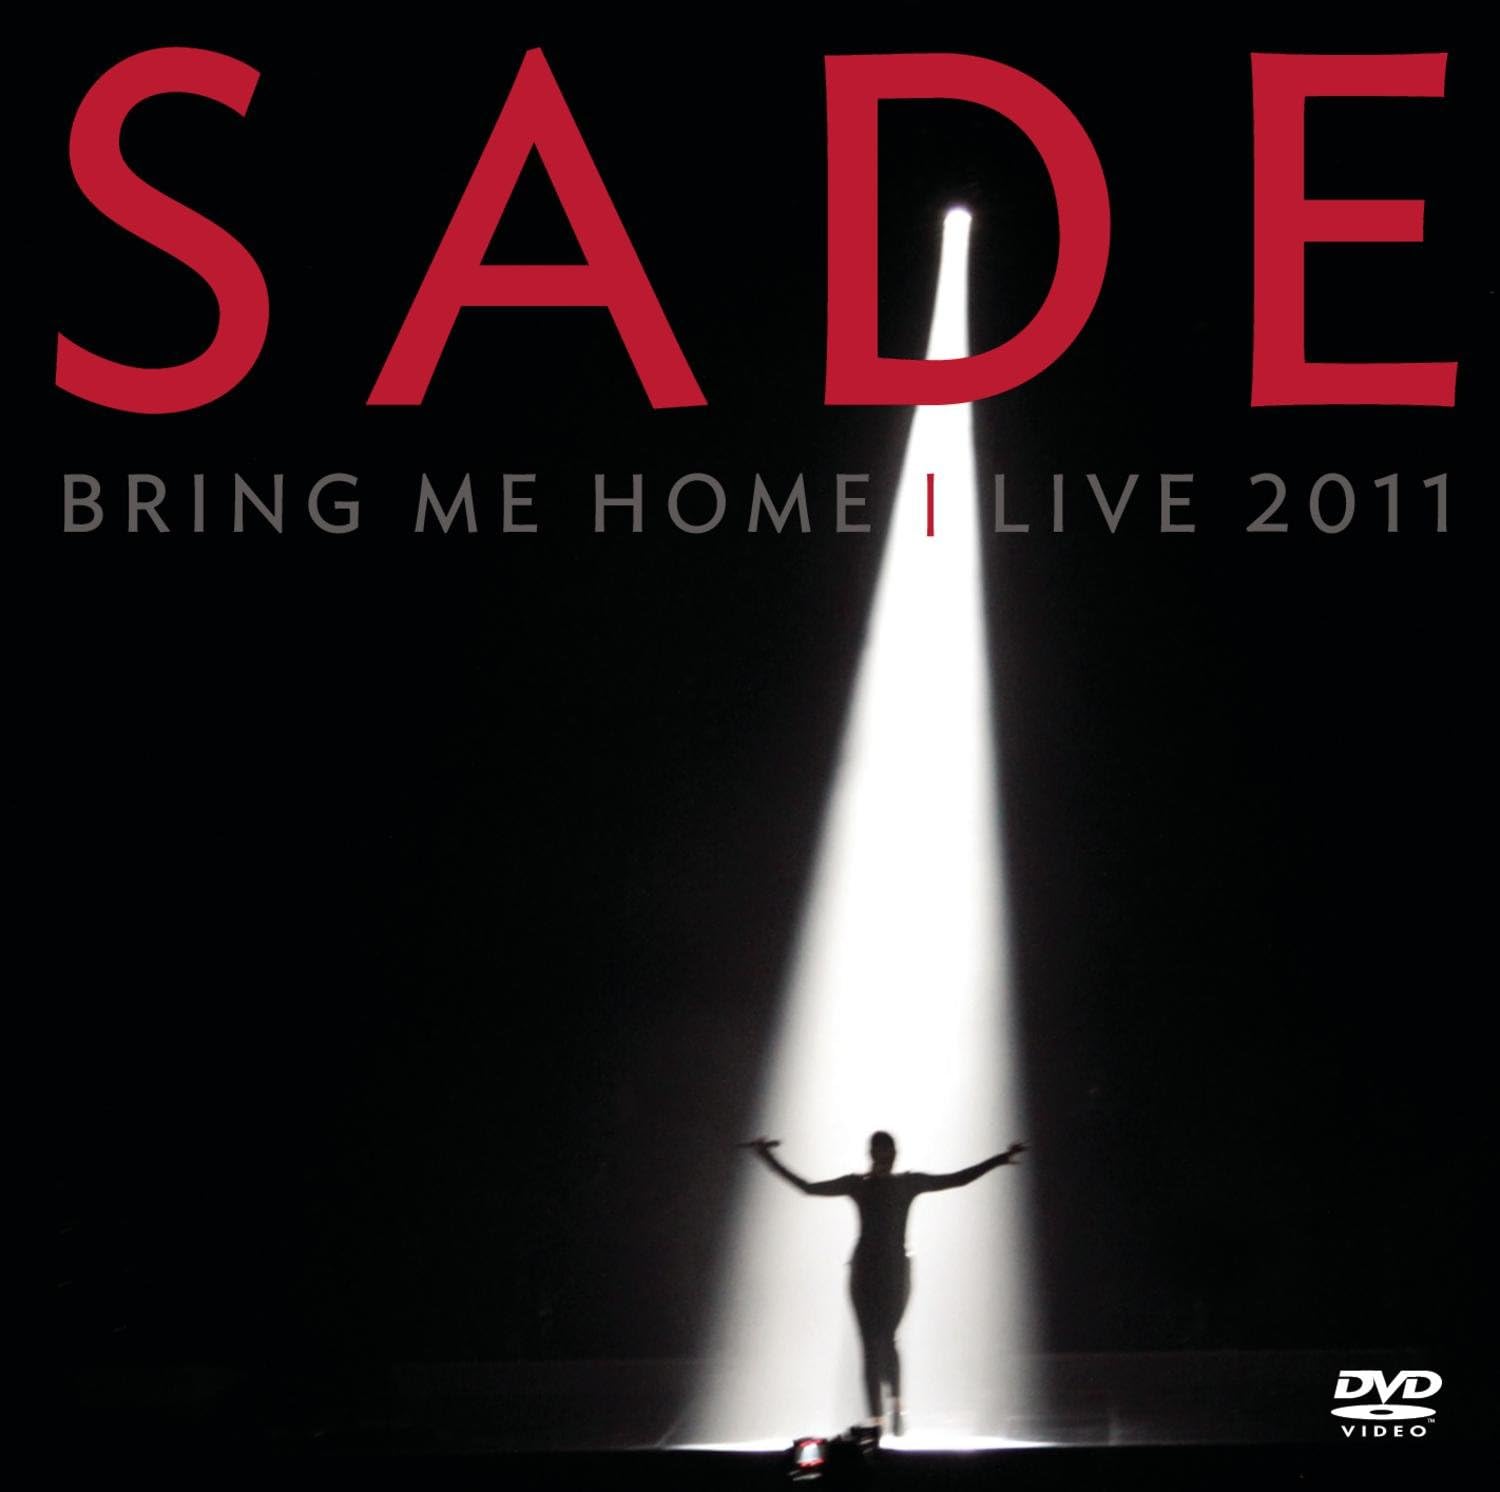 Sade Bring Me Home Live 2011 CD+DVD [Importado]